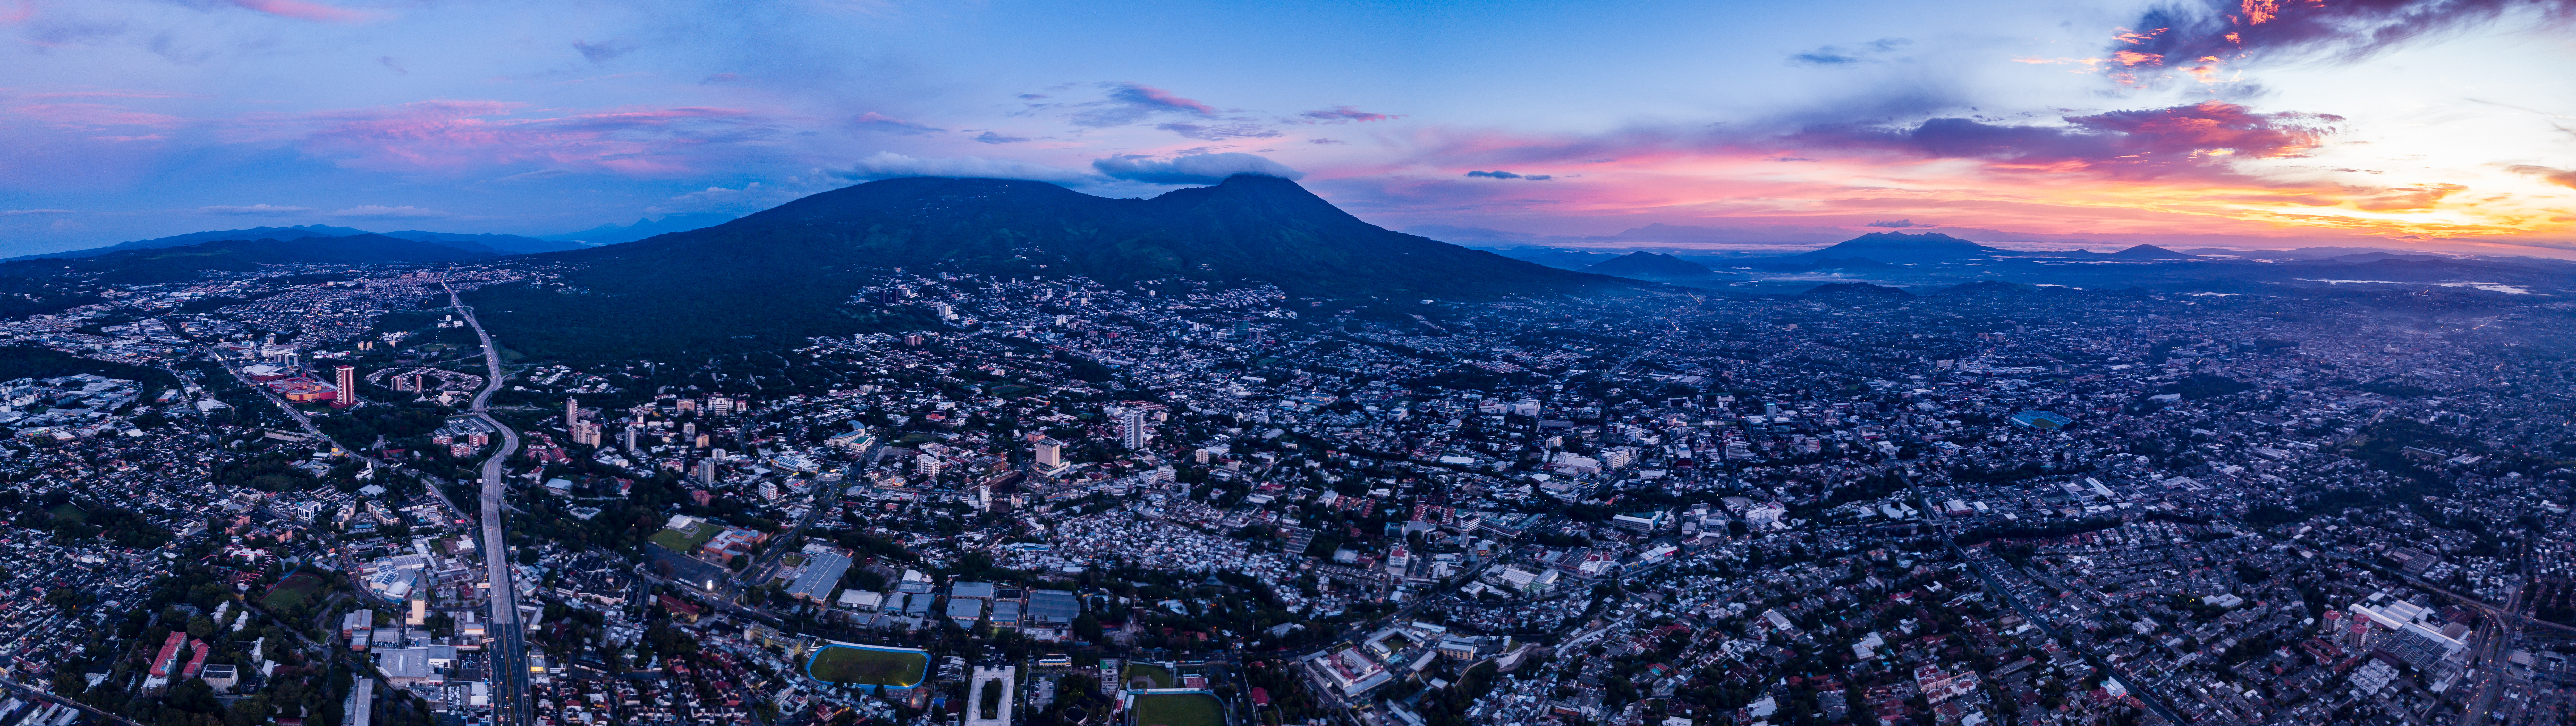 El Salvador skyline valley